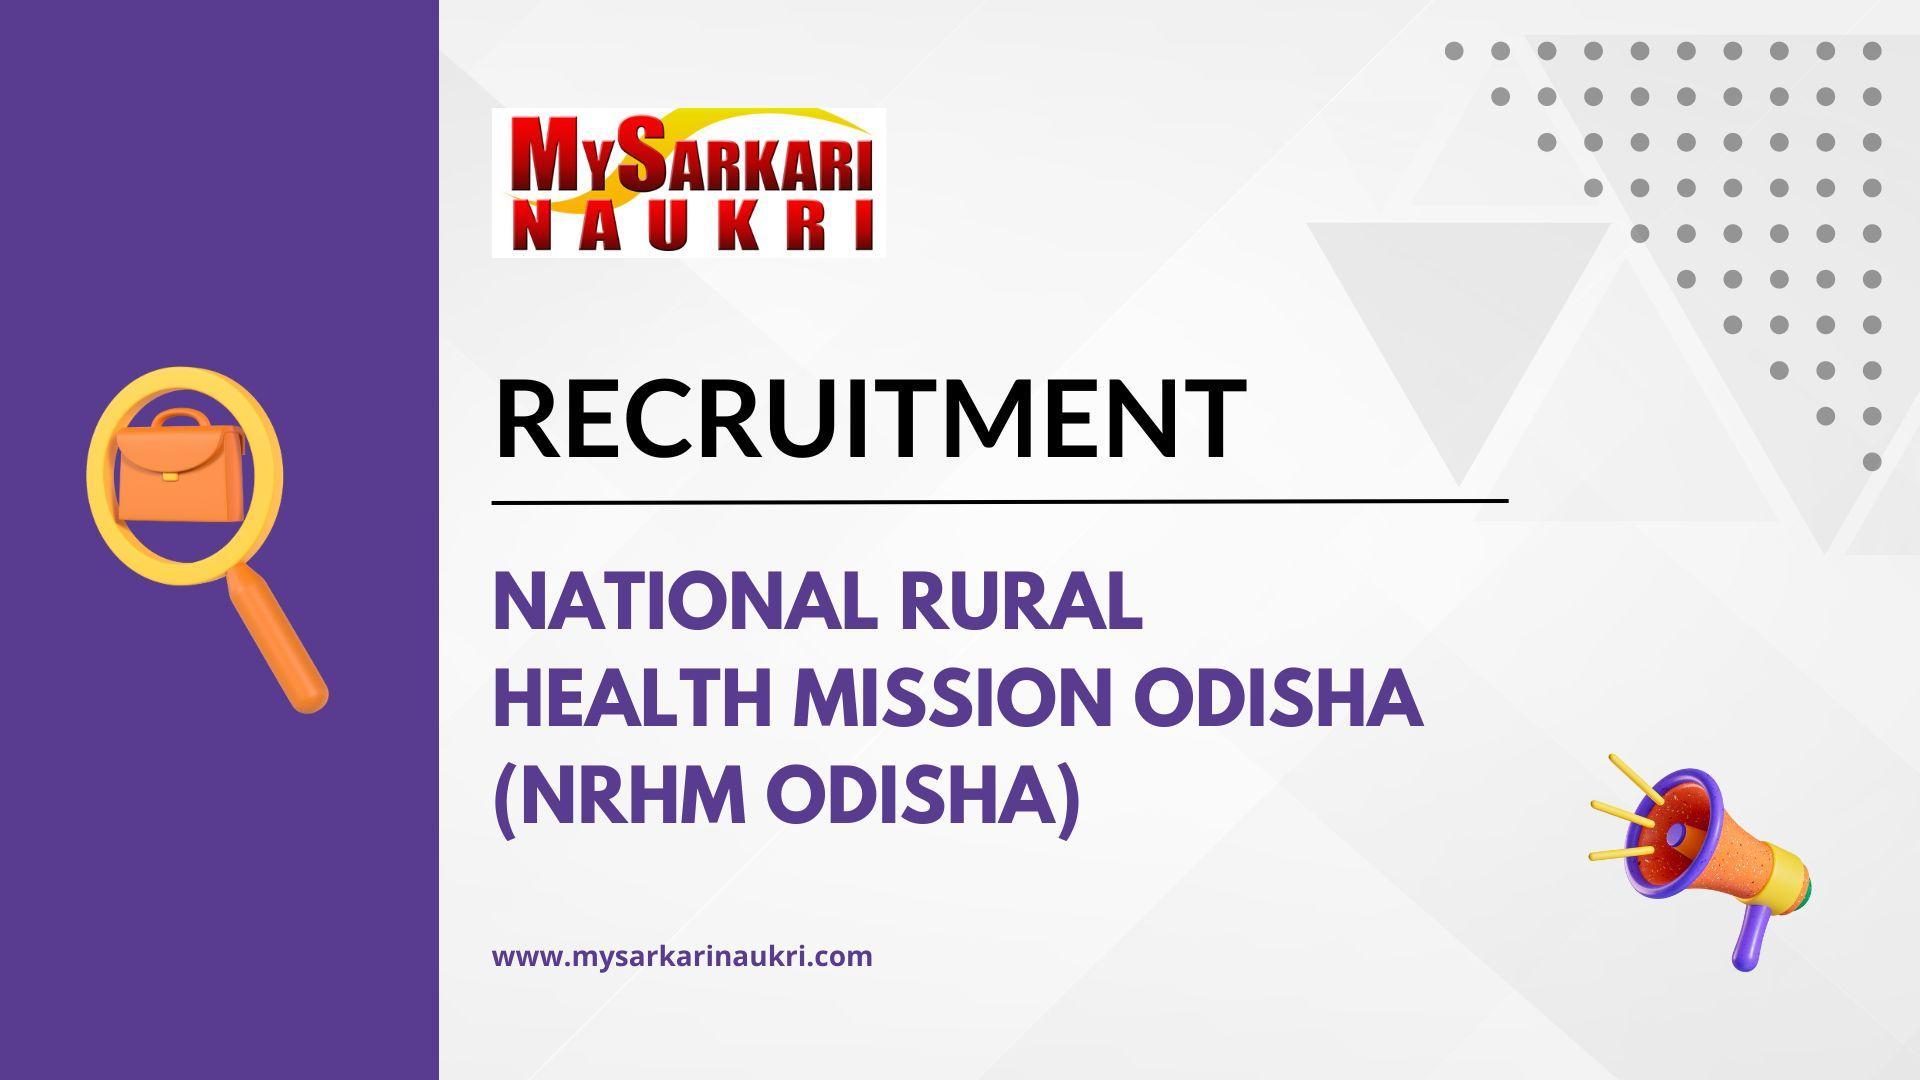 National Rural Health Mission Odisha (NRHM Odisha)